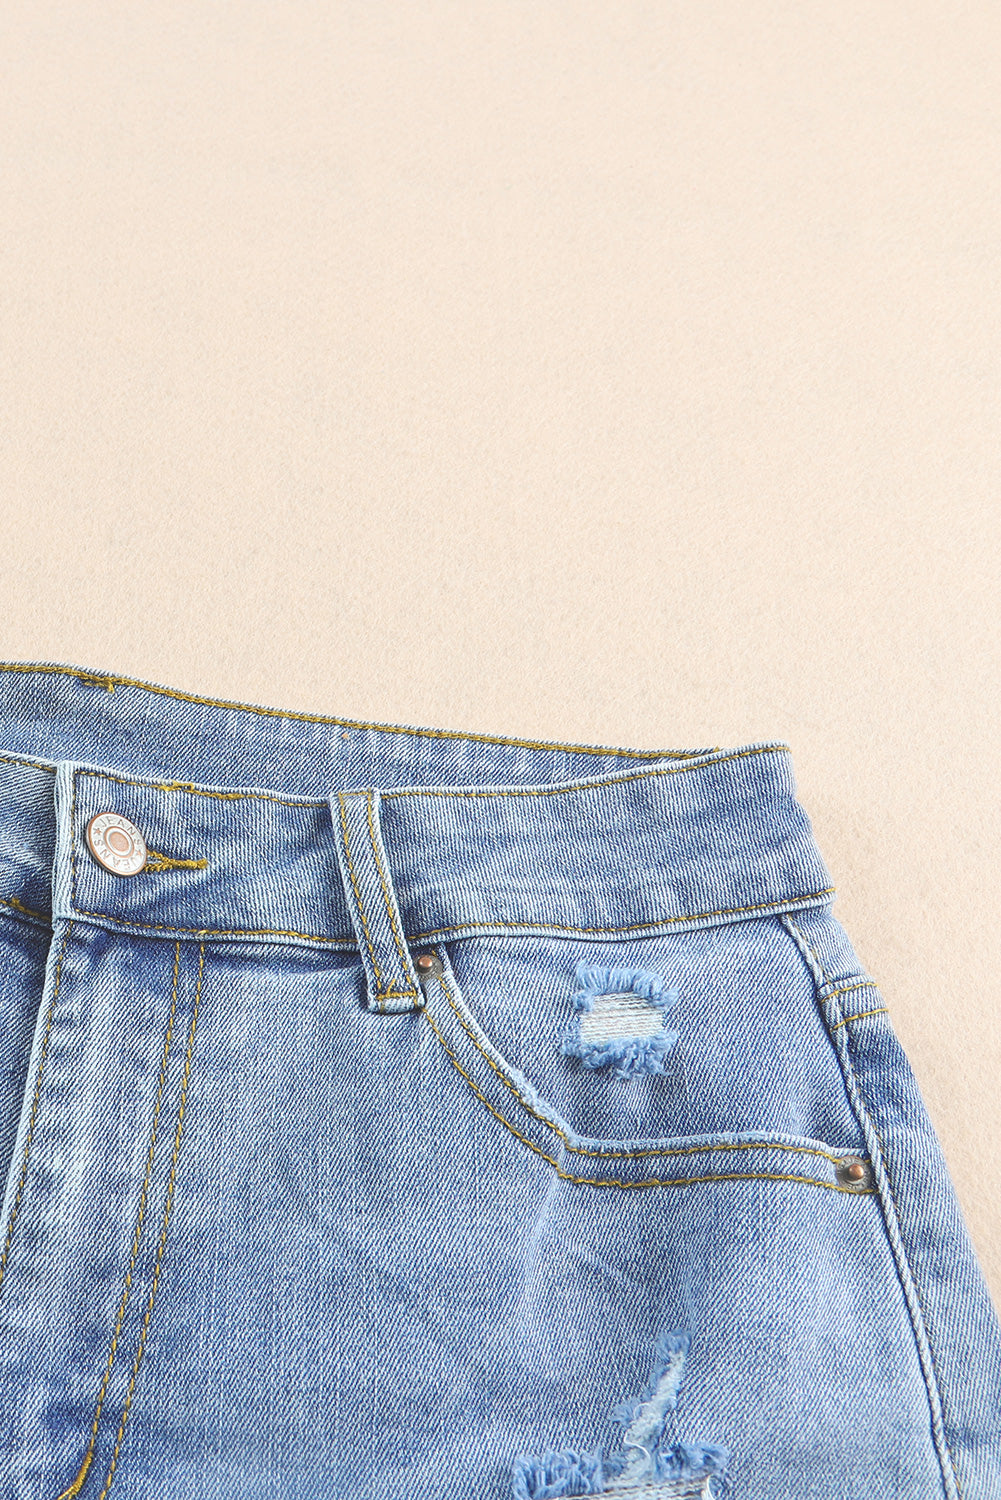 Sky Blue Floral Knit Insert Distressed Raw Hem Denim Shorts